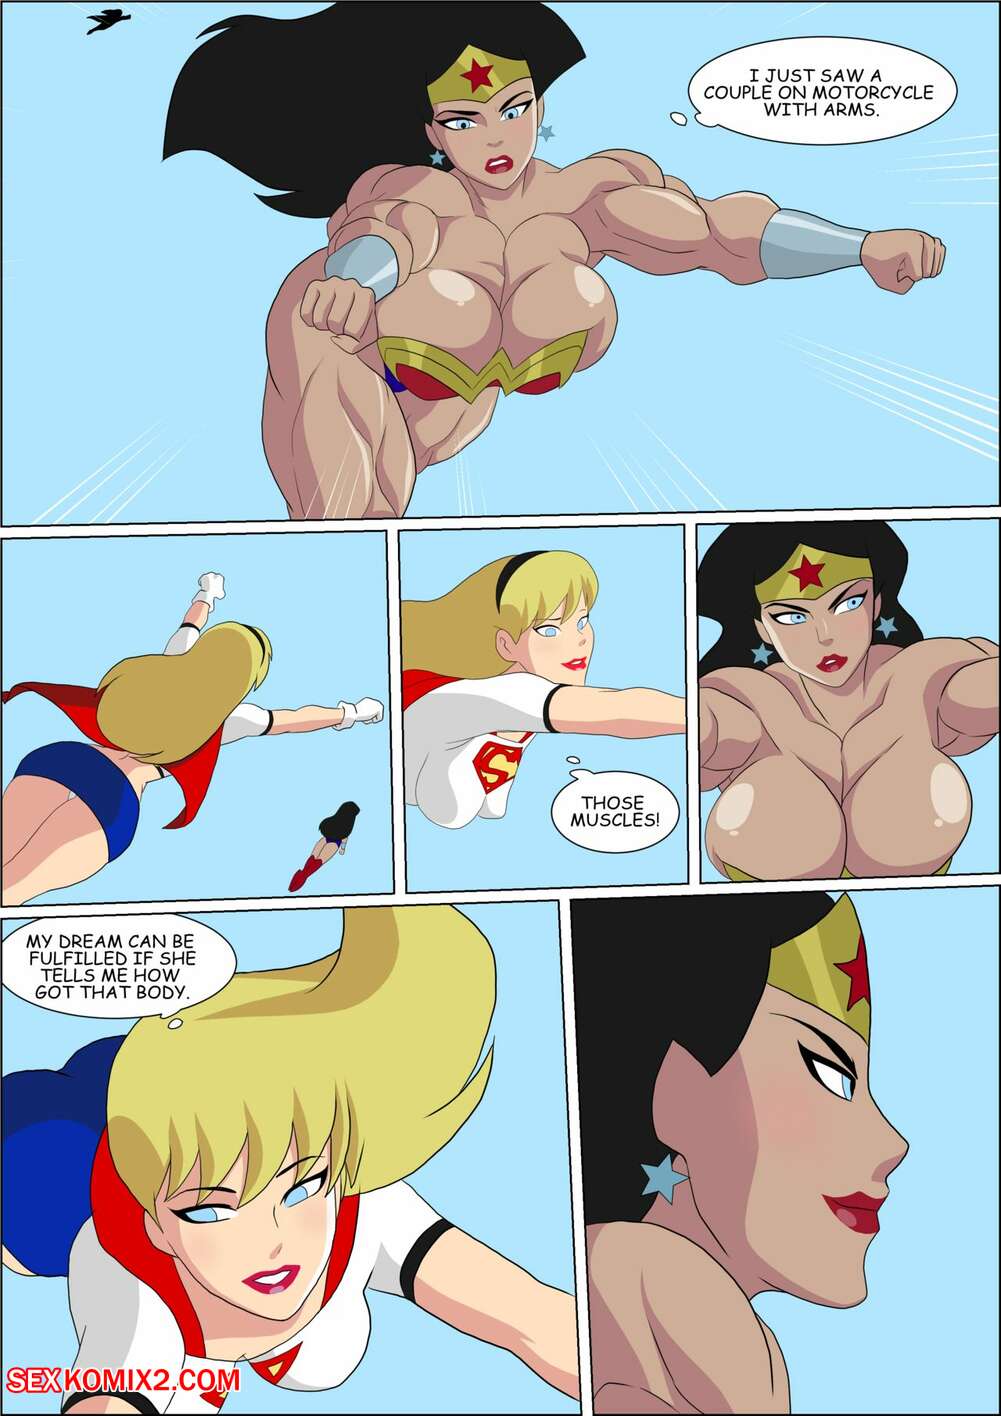 âœ…ï¸ Porn comic Wonder Woman. Zetarok Sex comic busty superhero babes | Porn  comics in English for adults only | sexkomix2.com